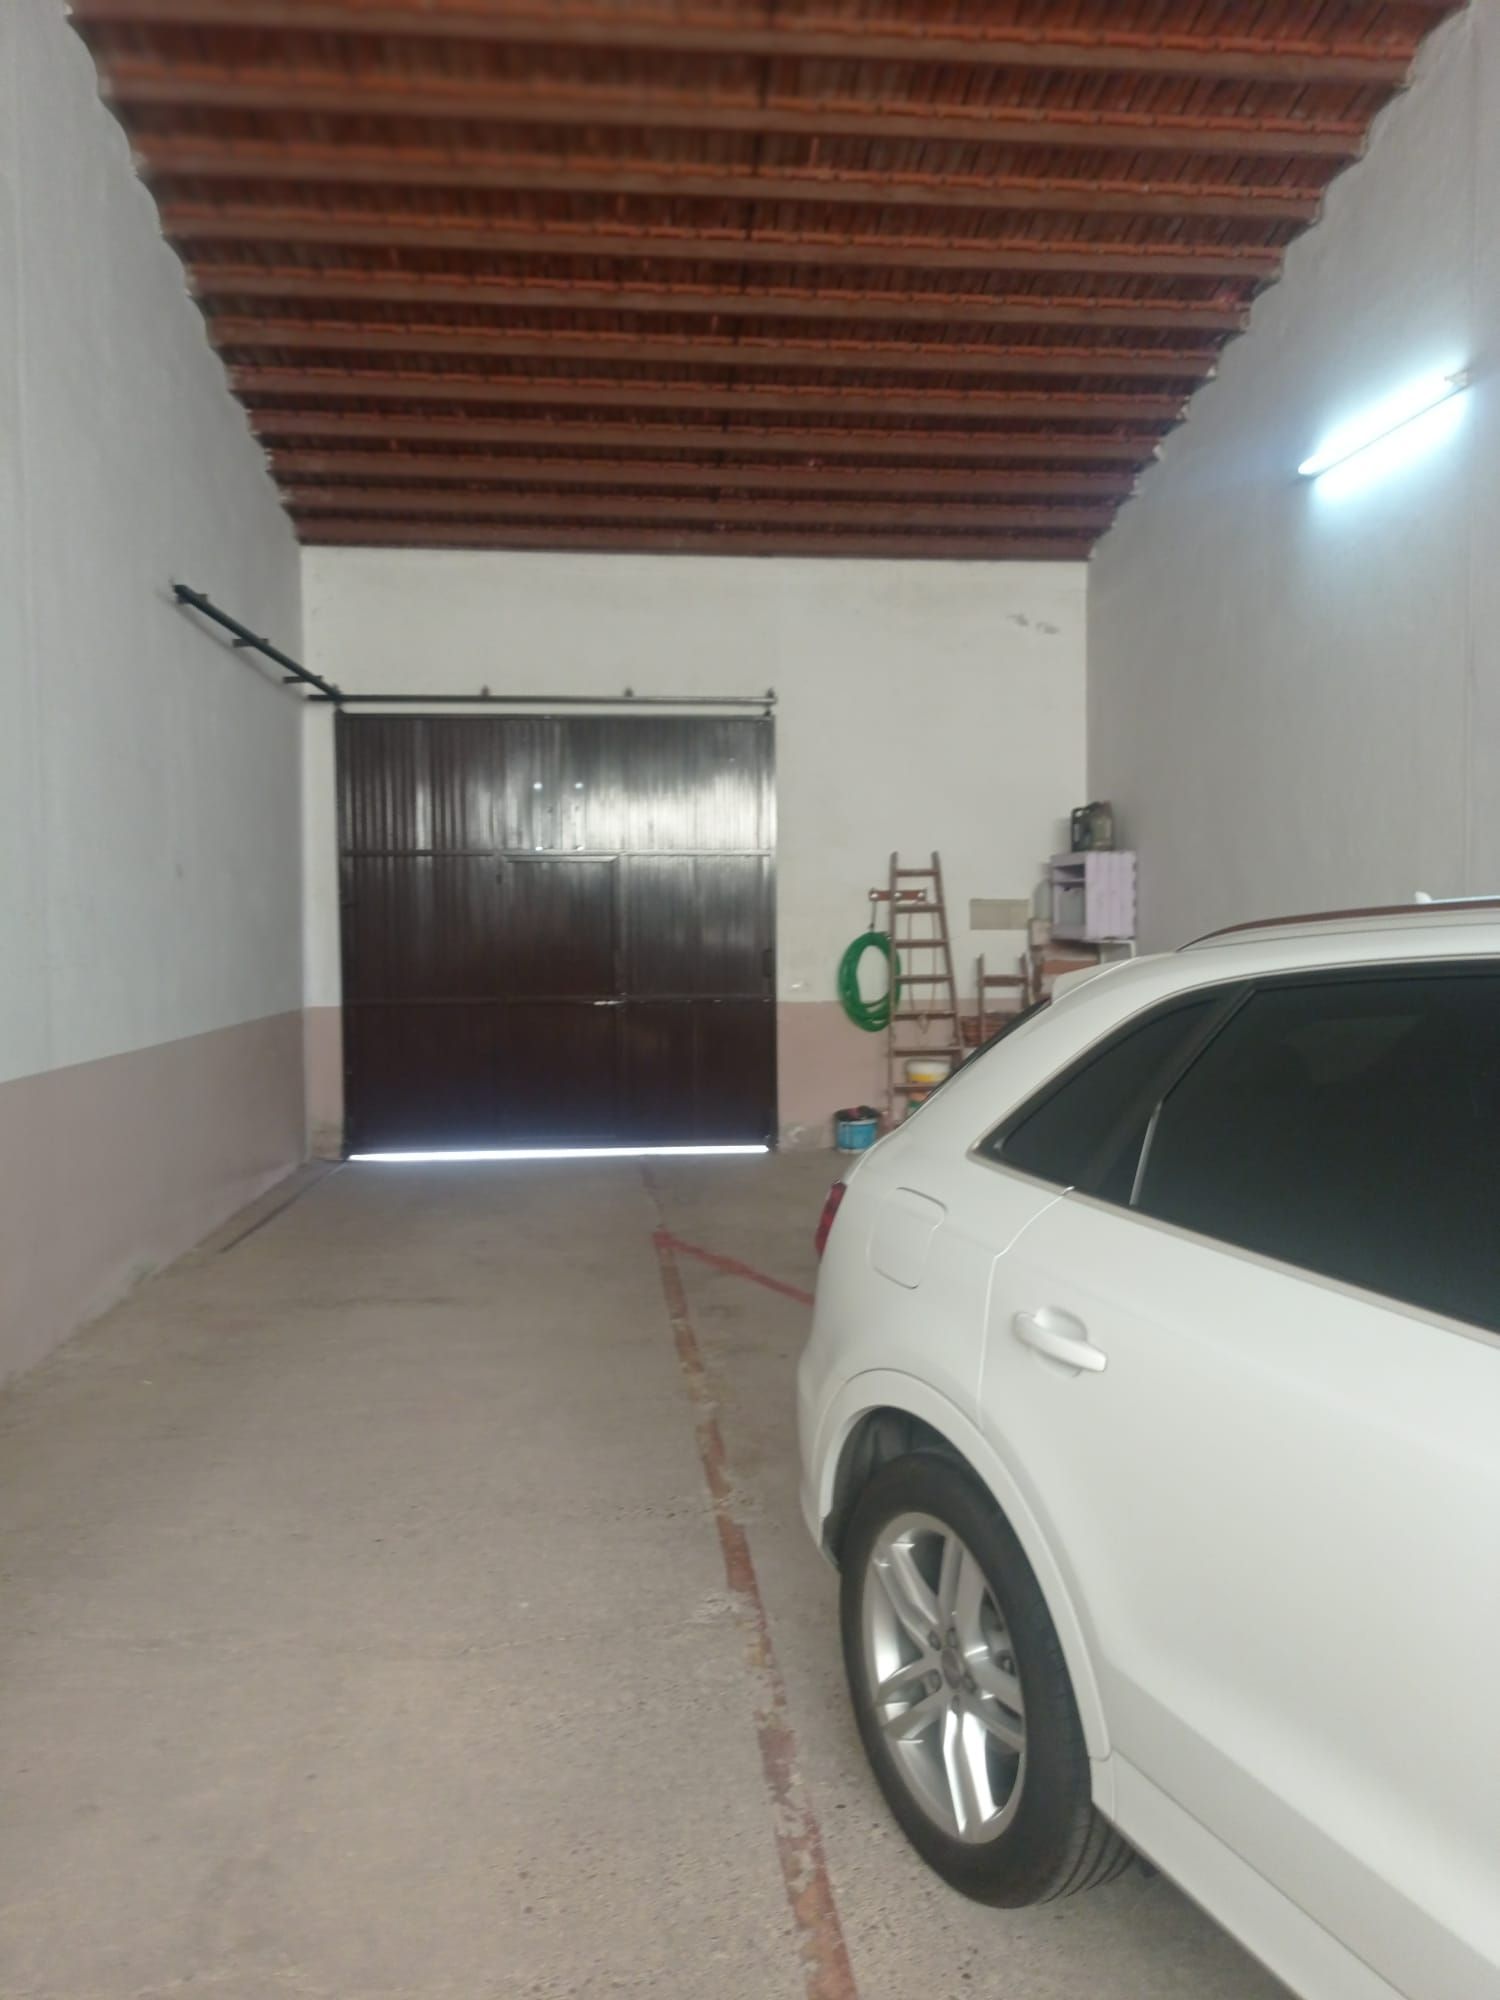 Garaje / Parking en Villanueva de la Serena, ORIENTE, venta